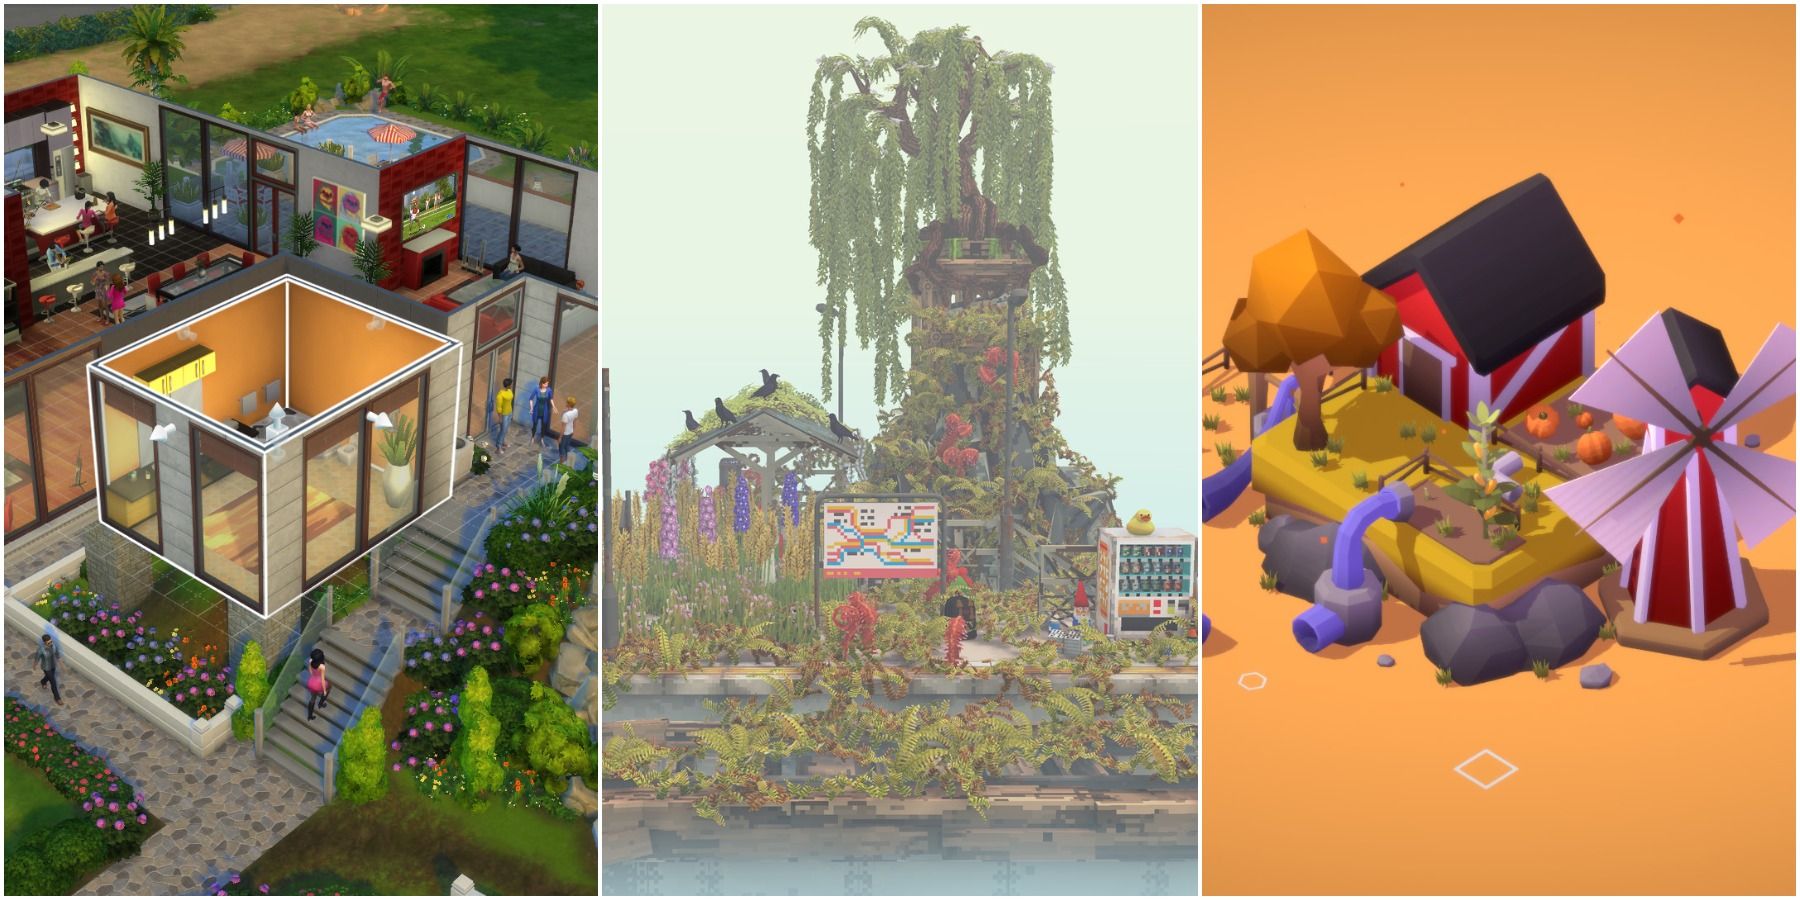 Рекомендуемое изображение для игр-песочниц, таких как статья Cloud Gardens. The Sims 4 и Sizeable включены.